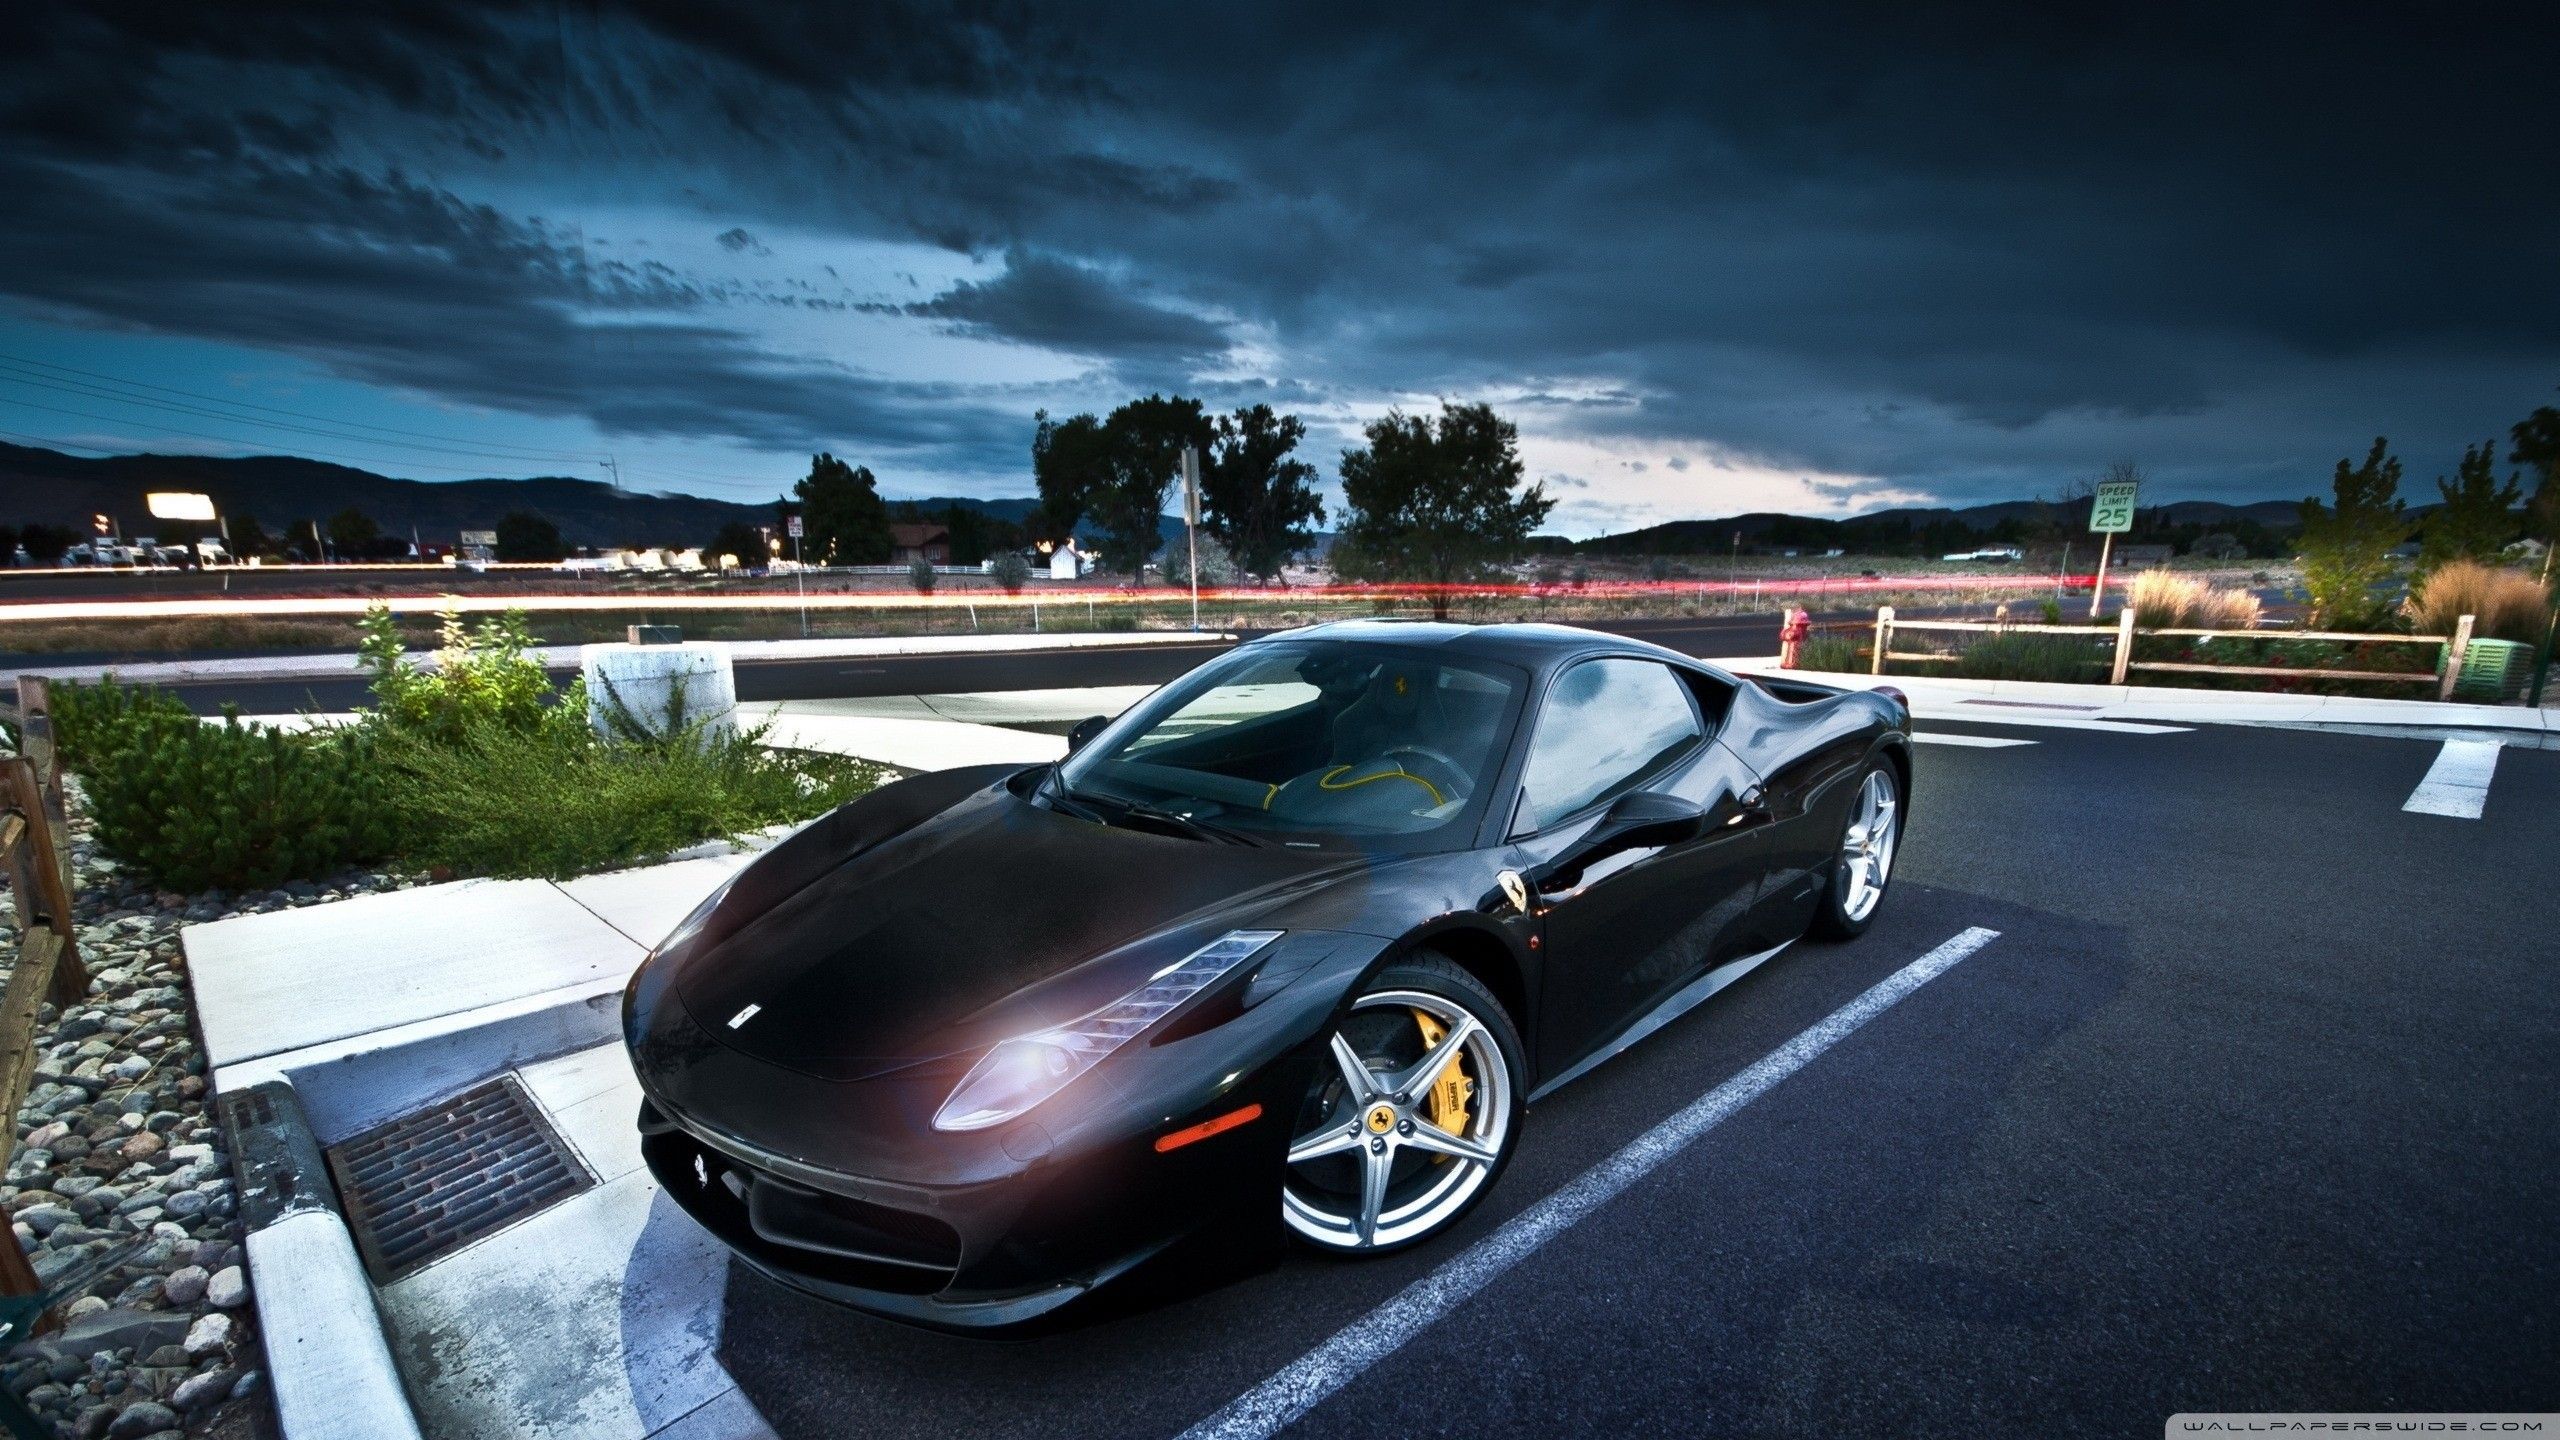 Fondos de Ferrari negros (más de 69 imágenes de fondo)